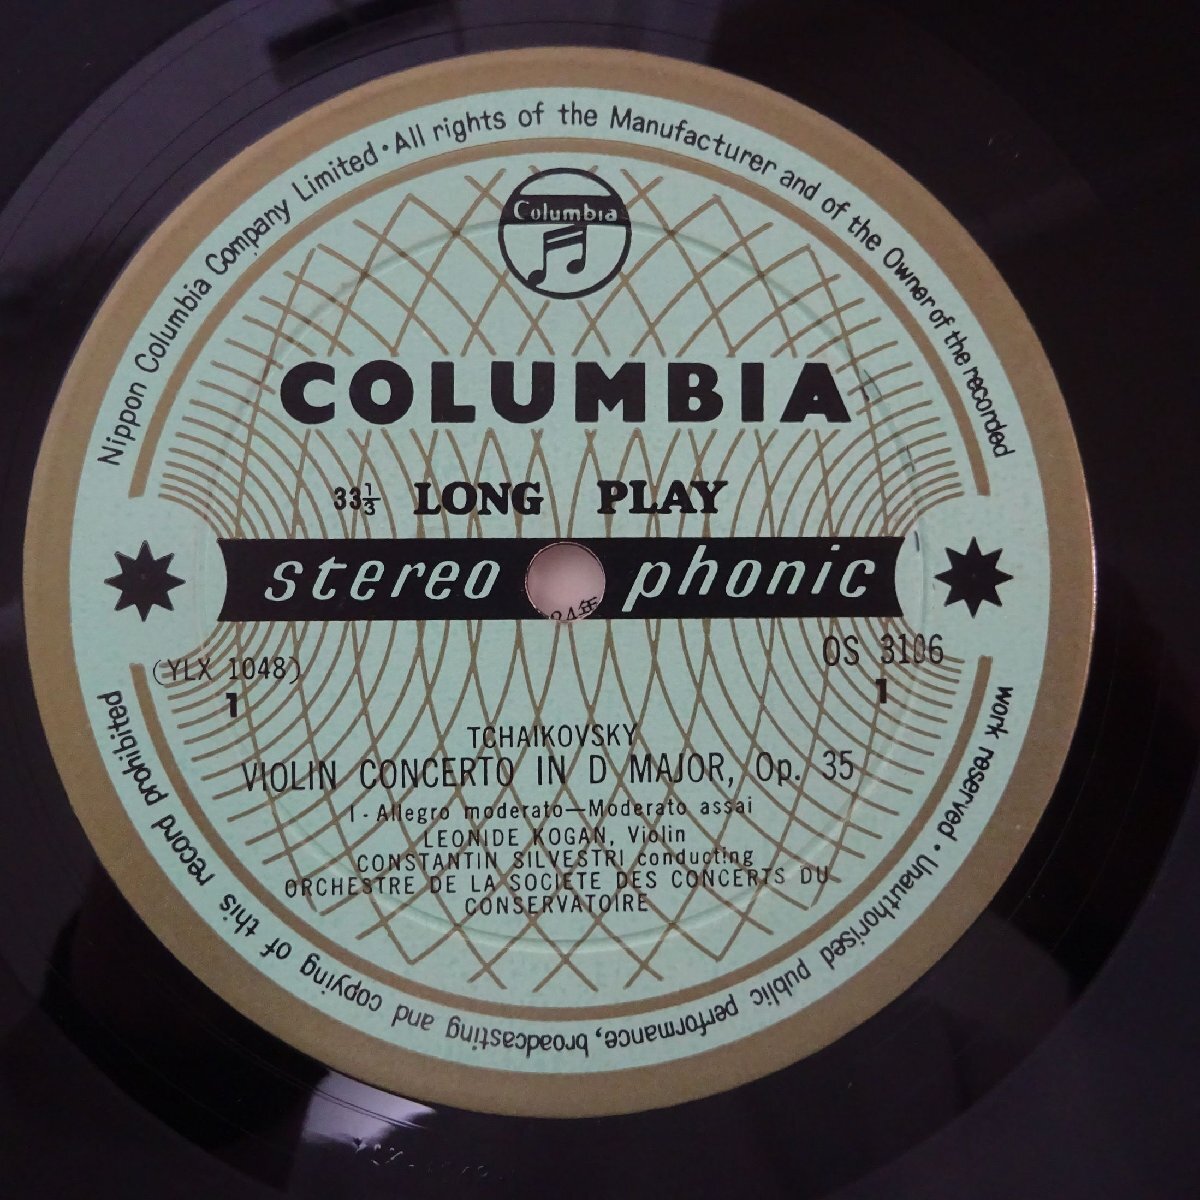 19059380;【国内COLUMBIA/本邦初期ペラ/金環OS】コーガン/シルヴェストリ チャイコフスキー/ヴァイオリン協奏曲の画像3